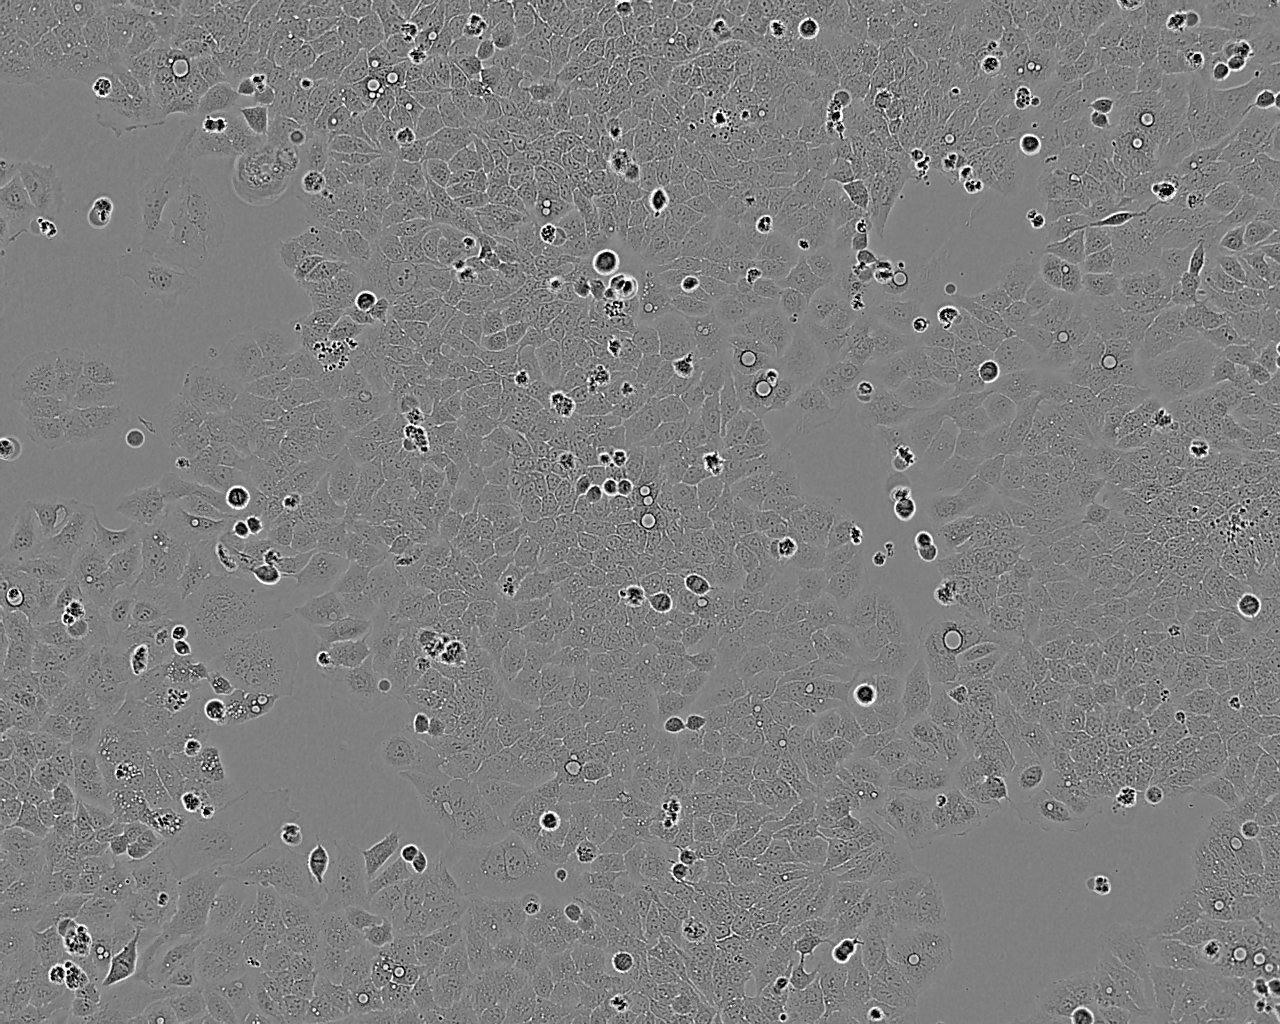 NCI-H676B cell line人肺腺癌细胞系,NCI-H676B cell line